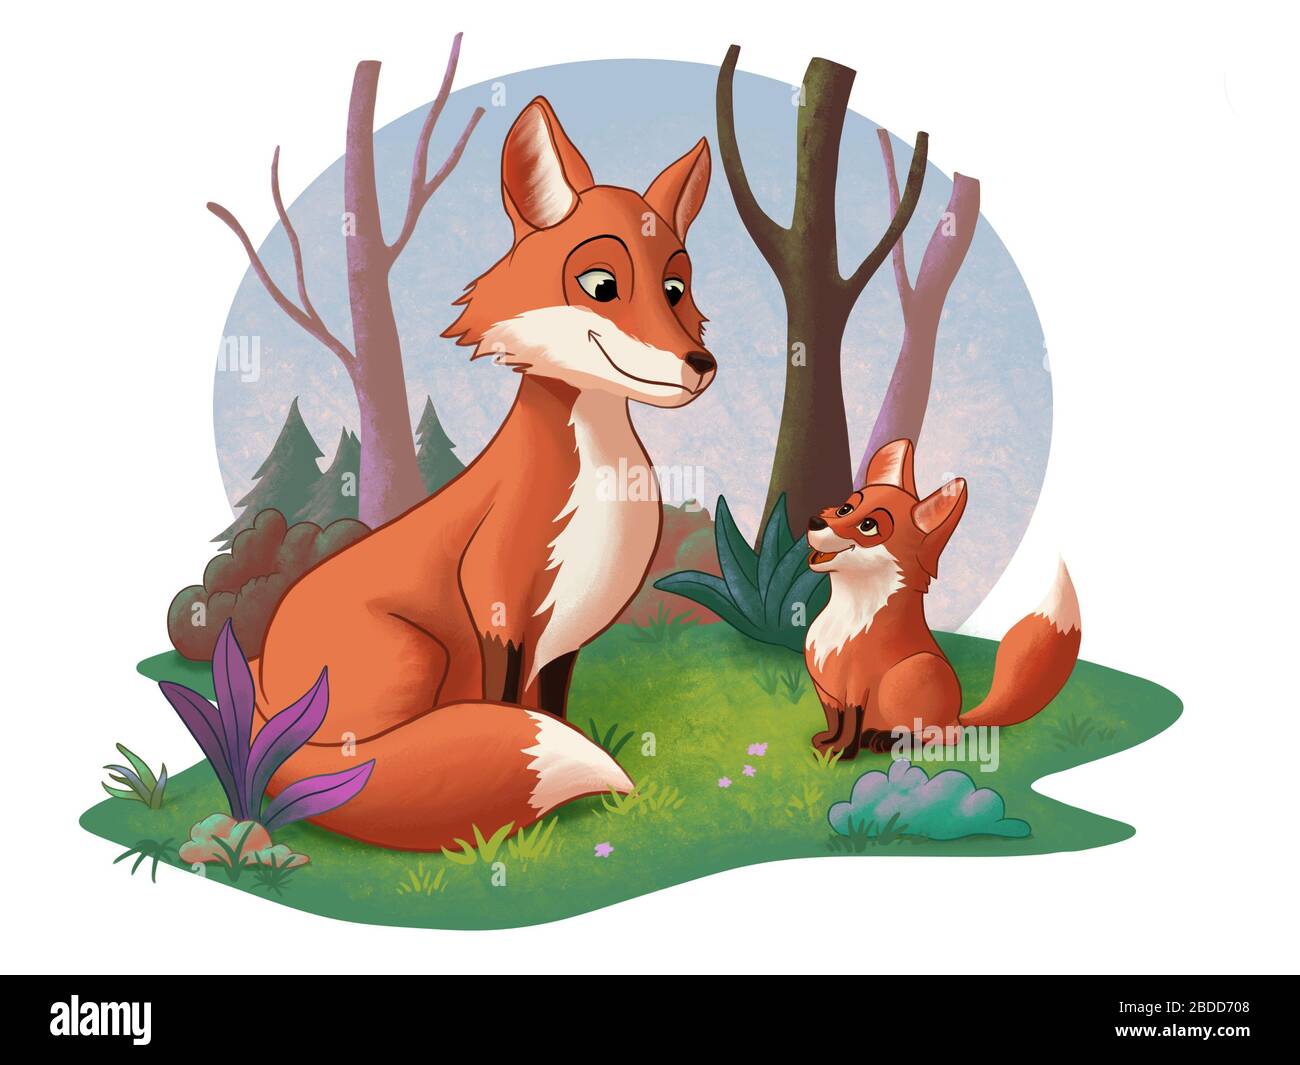 Cub de zorro lindo y un zorro adulto mirando el uno al otro. Ilustración digital. Foto de stock